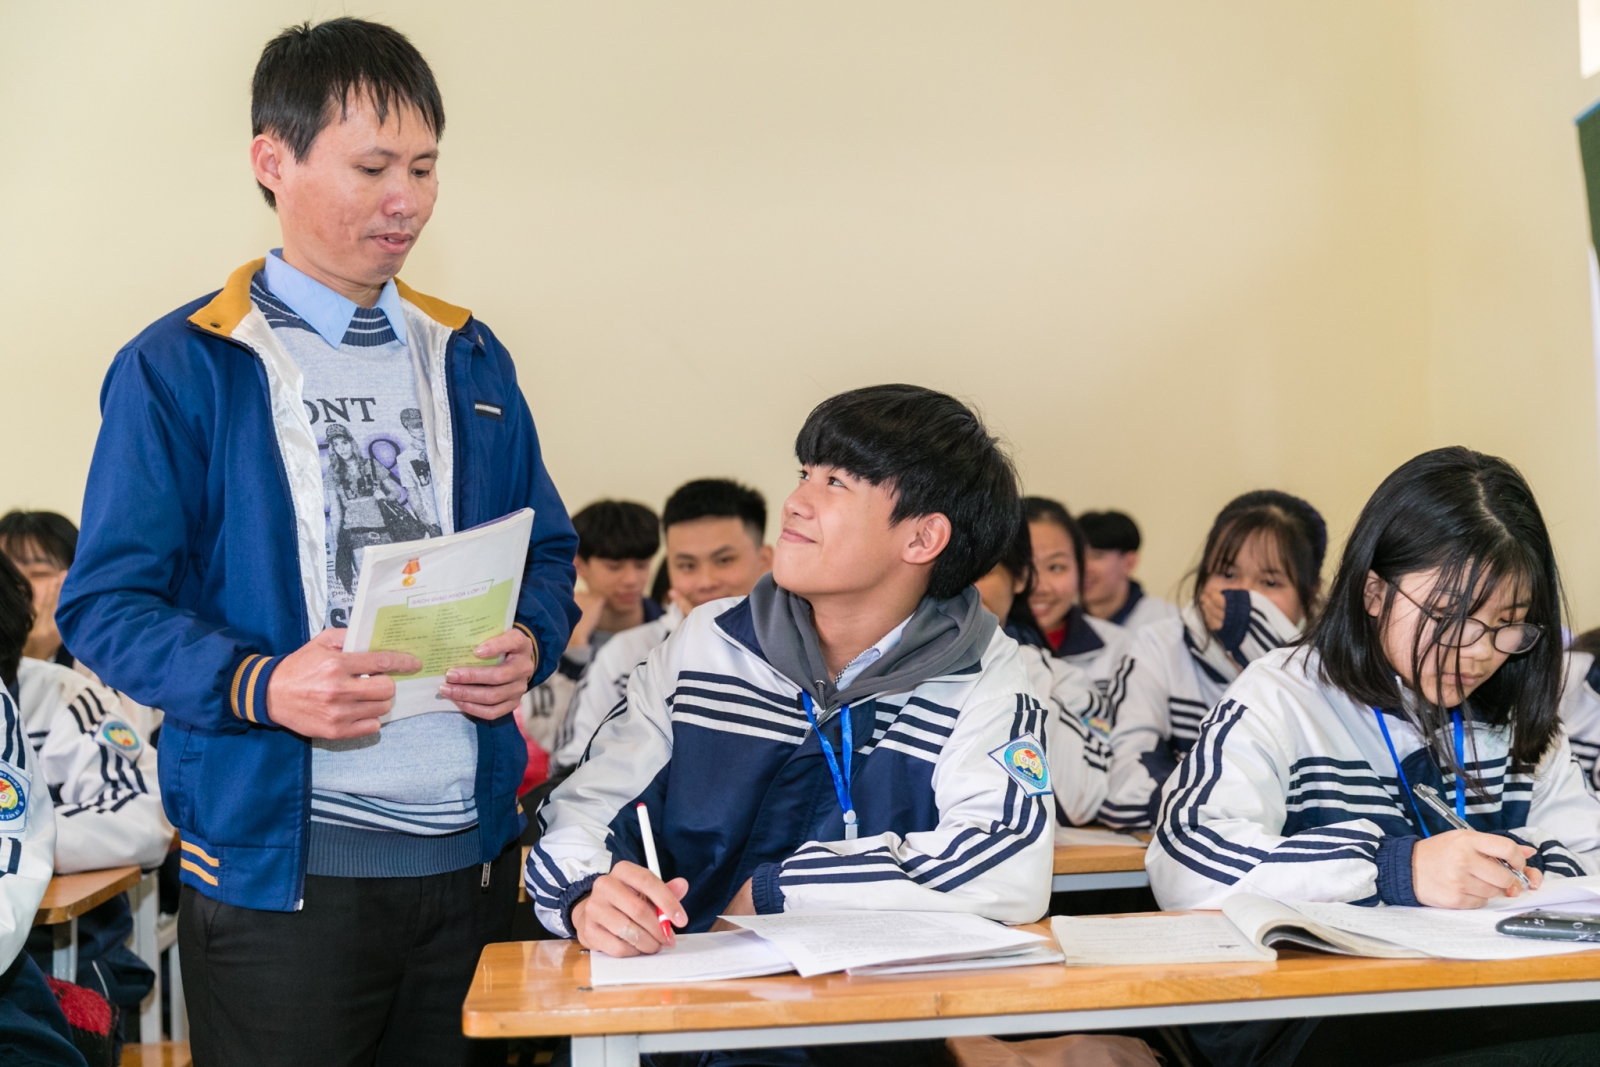 Nghệ An: Tổ chức thi giáo viên chủ nhiệm giỏi tỉnh sau 10 năm gián đoạn - Ảnh minh hoạ 4